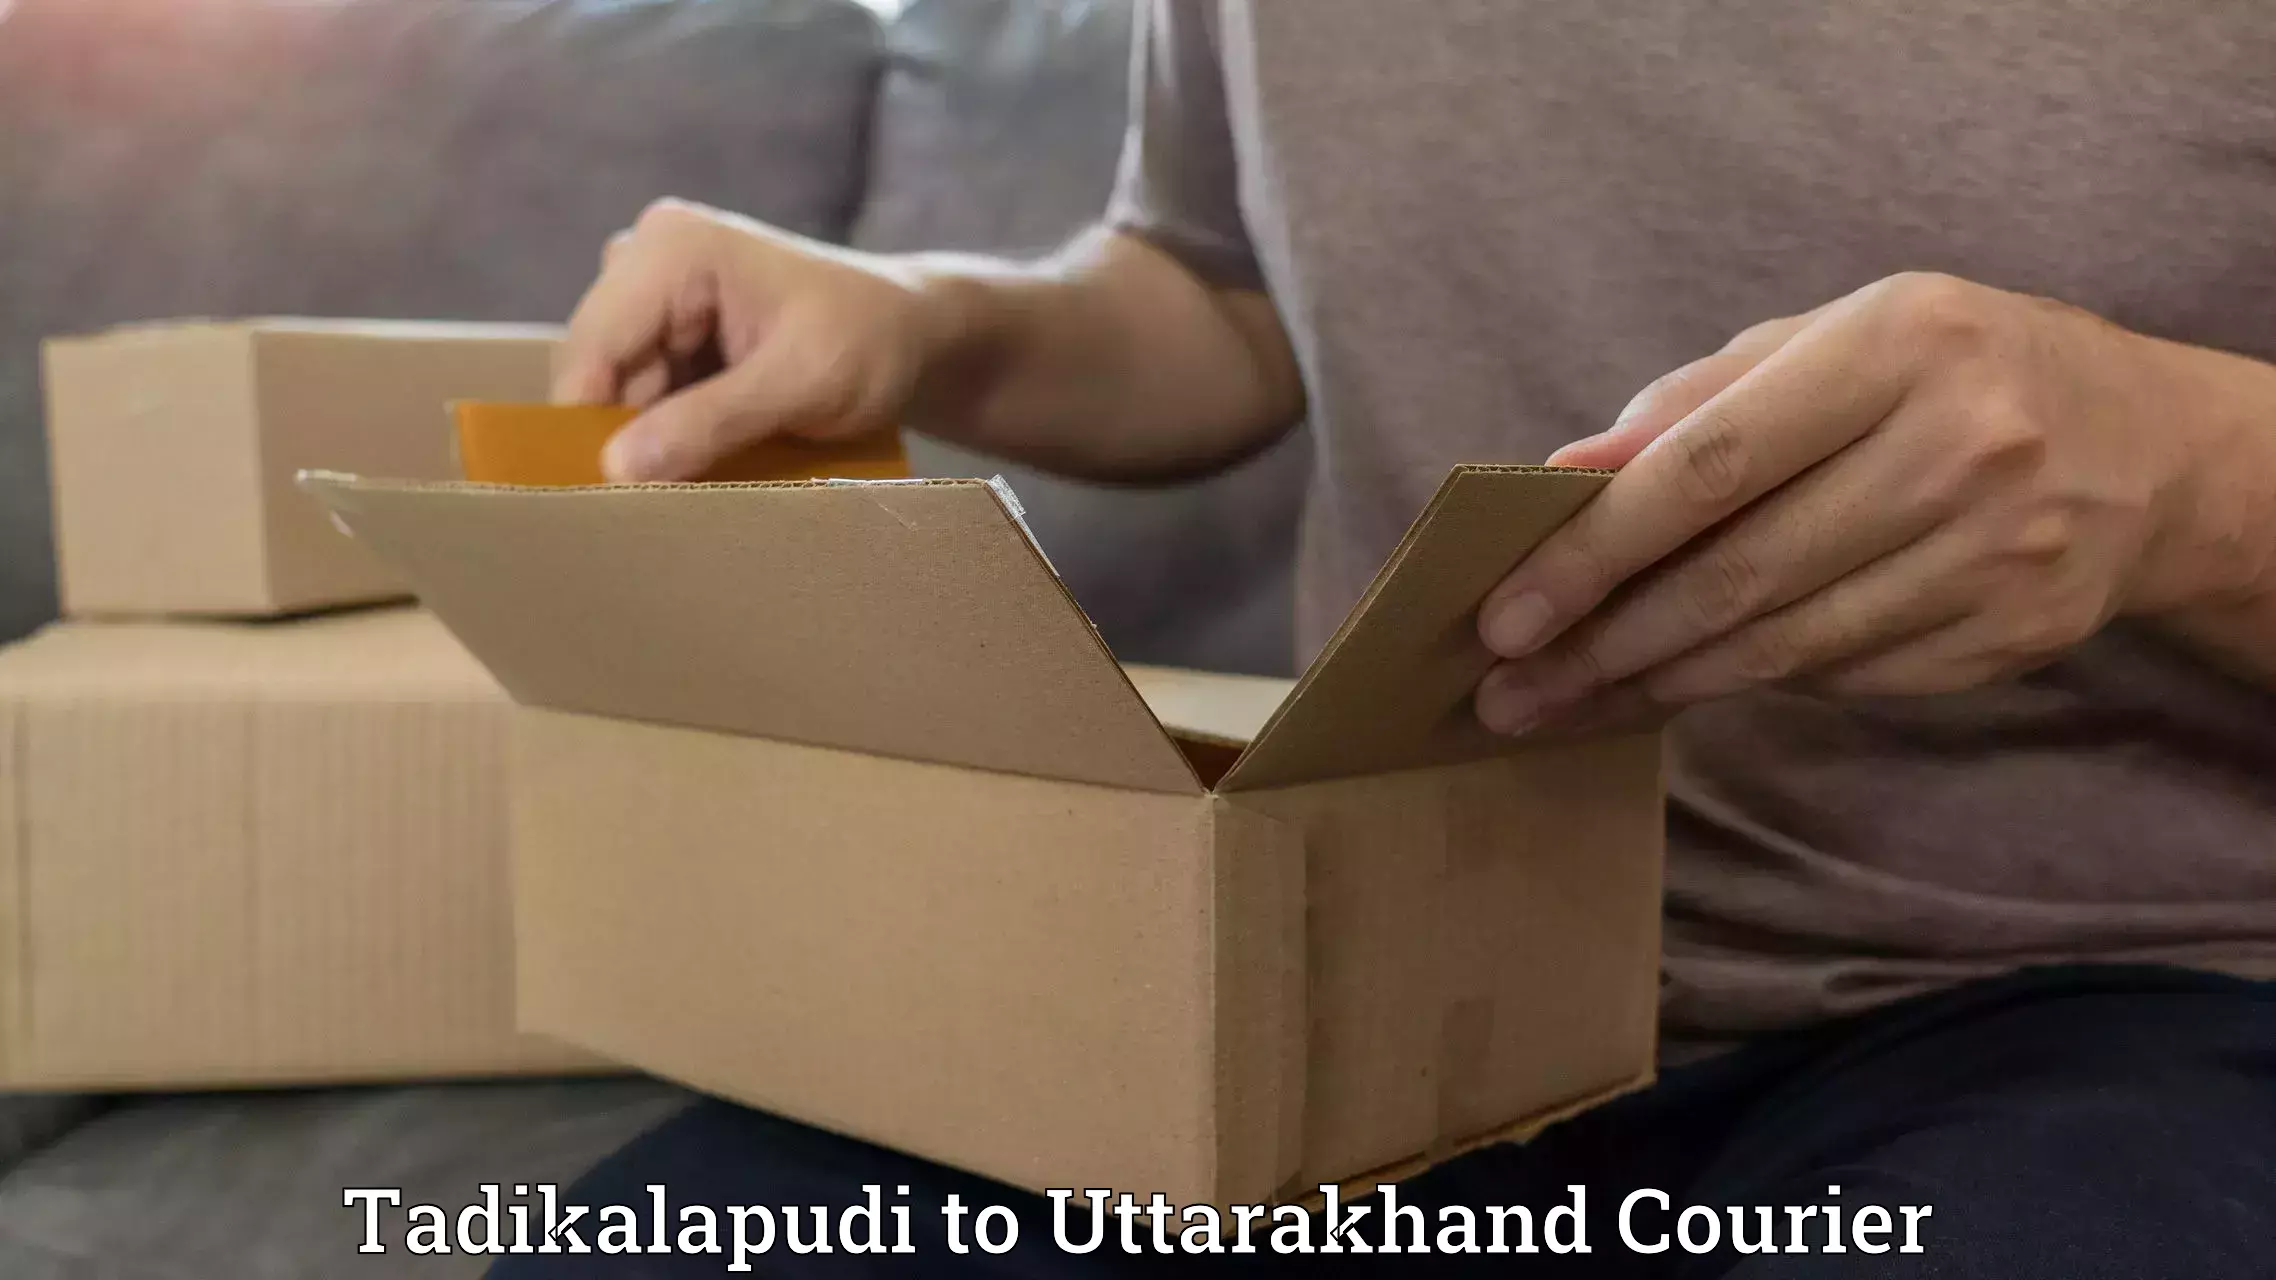 Next-generation courier services Tadikalapudi to Uttarakhand